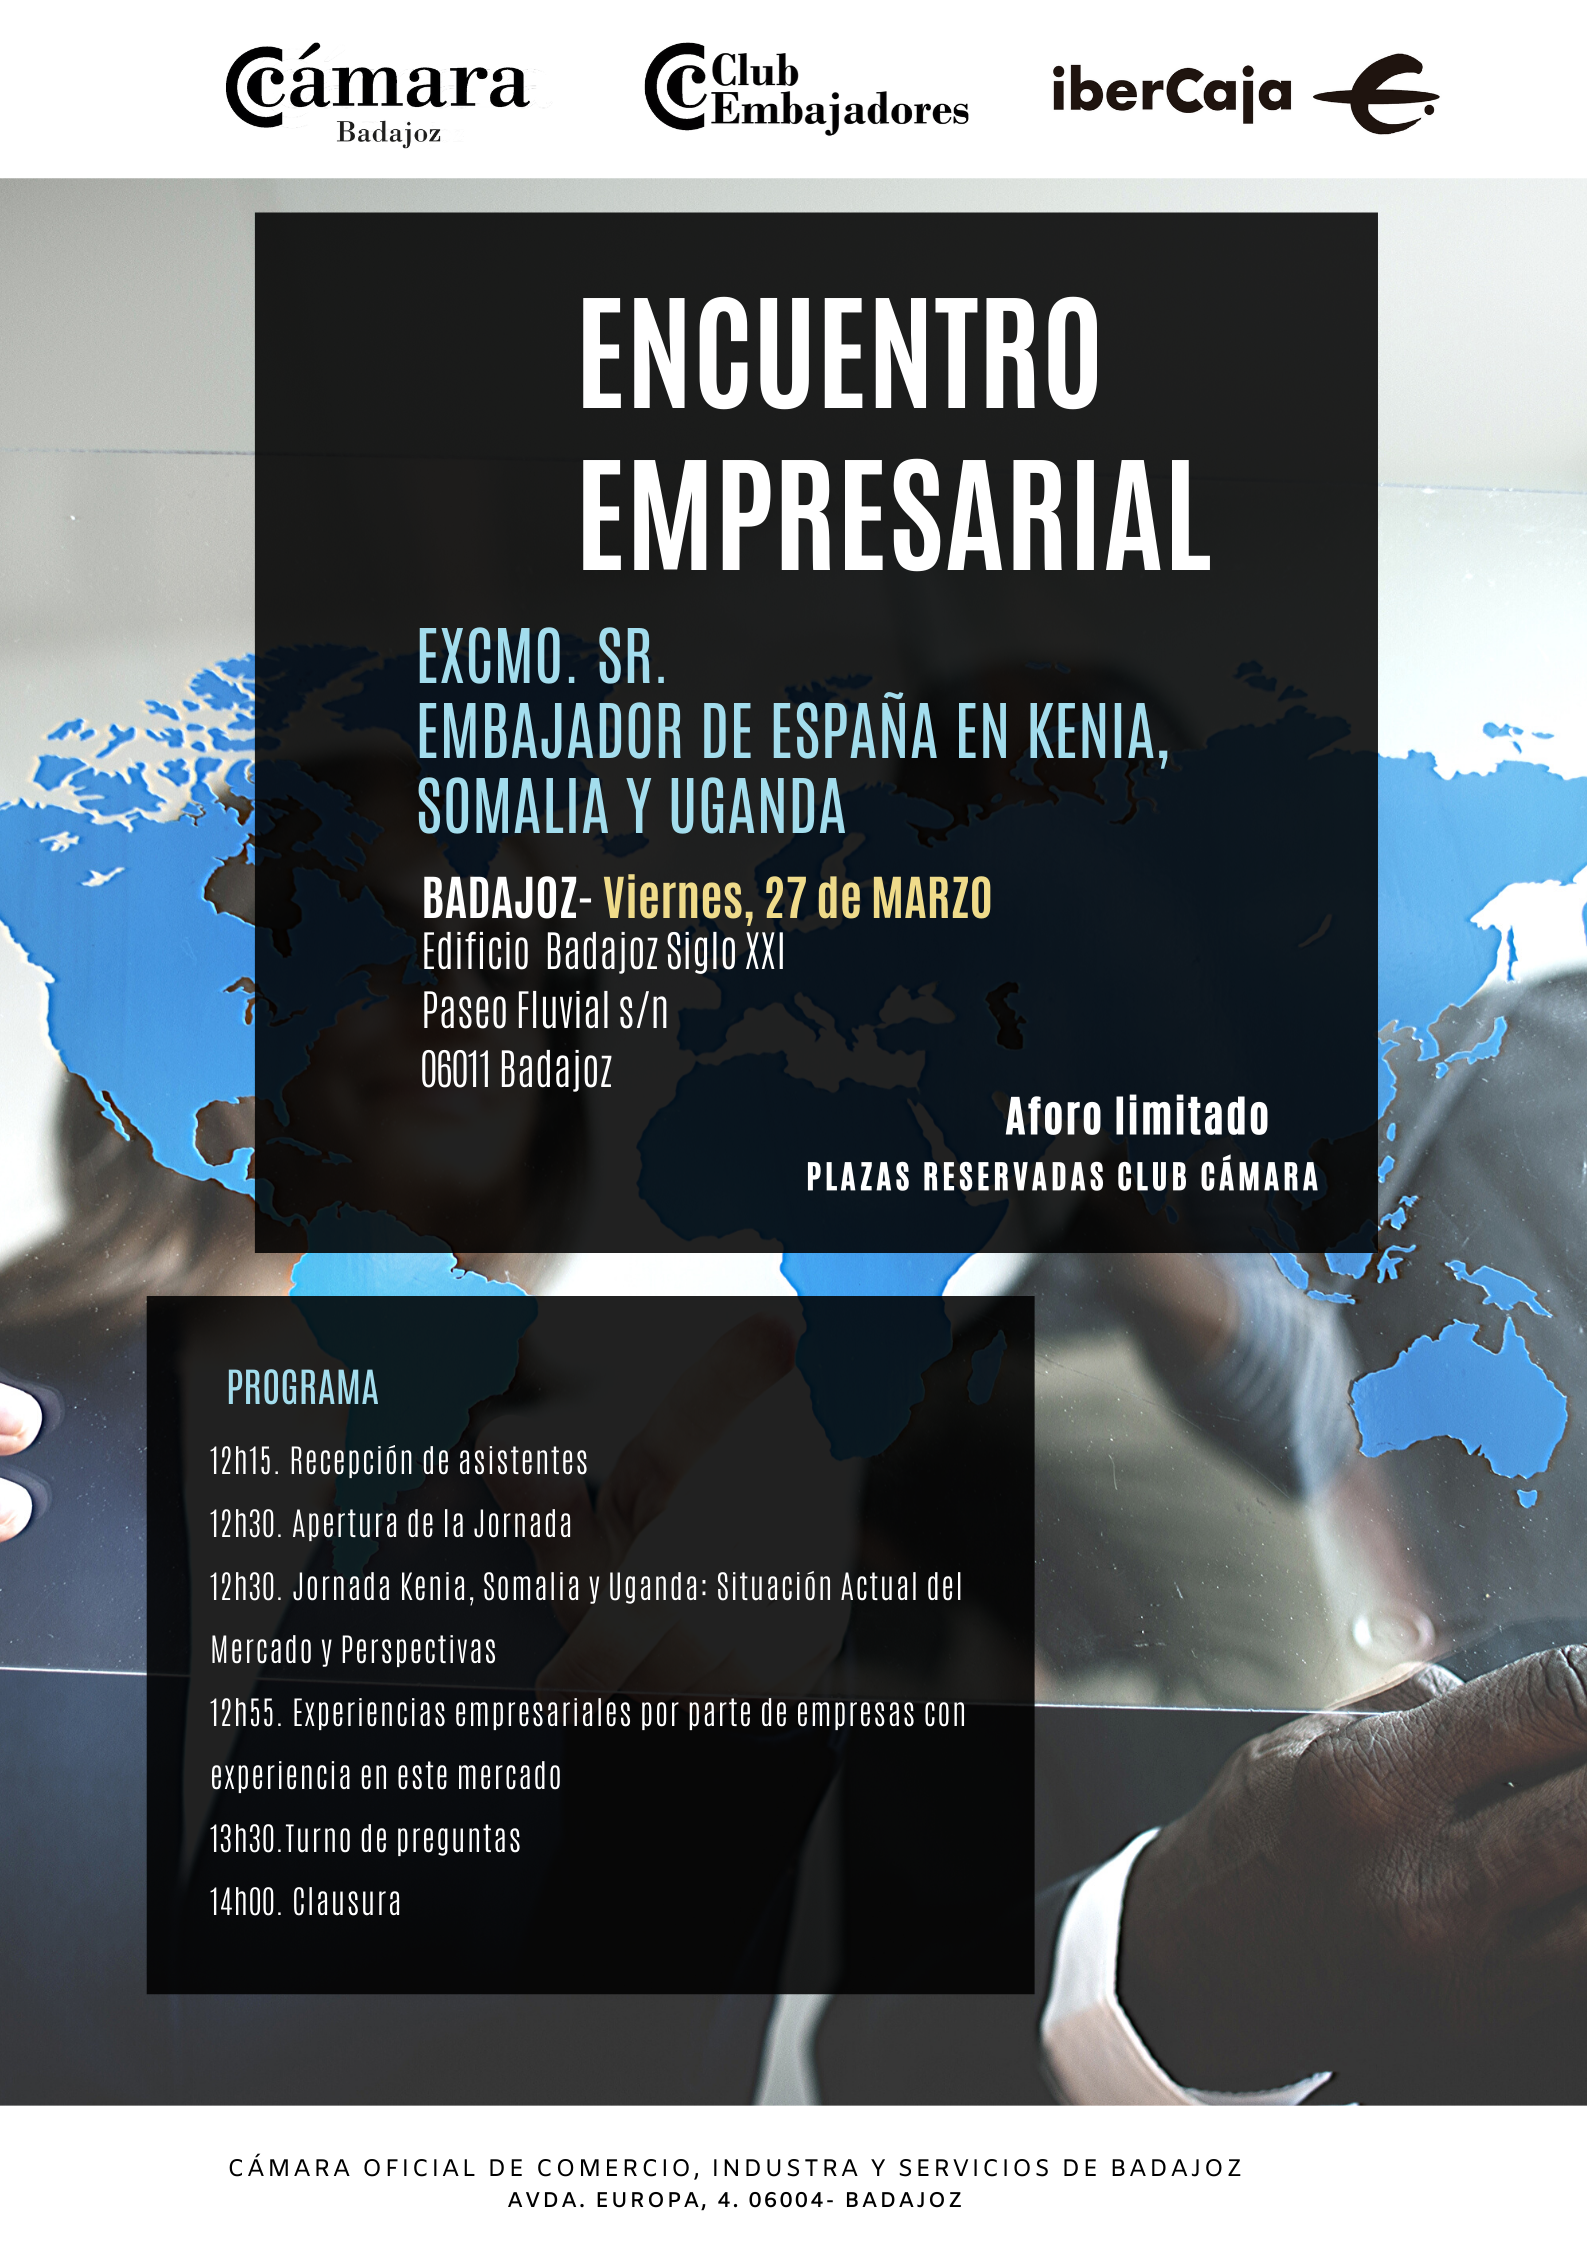 BADAJOZ- Club Embajadores- ENCUENTRO EMPRESARIAL CON EL EXCMO. SR.  EMBAJADOR DE ESPAÑA EN KENIA, SOMALIA Y UGANDA